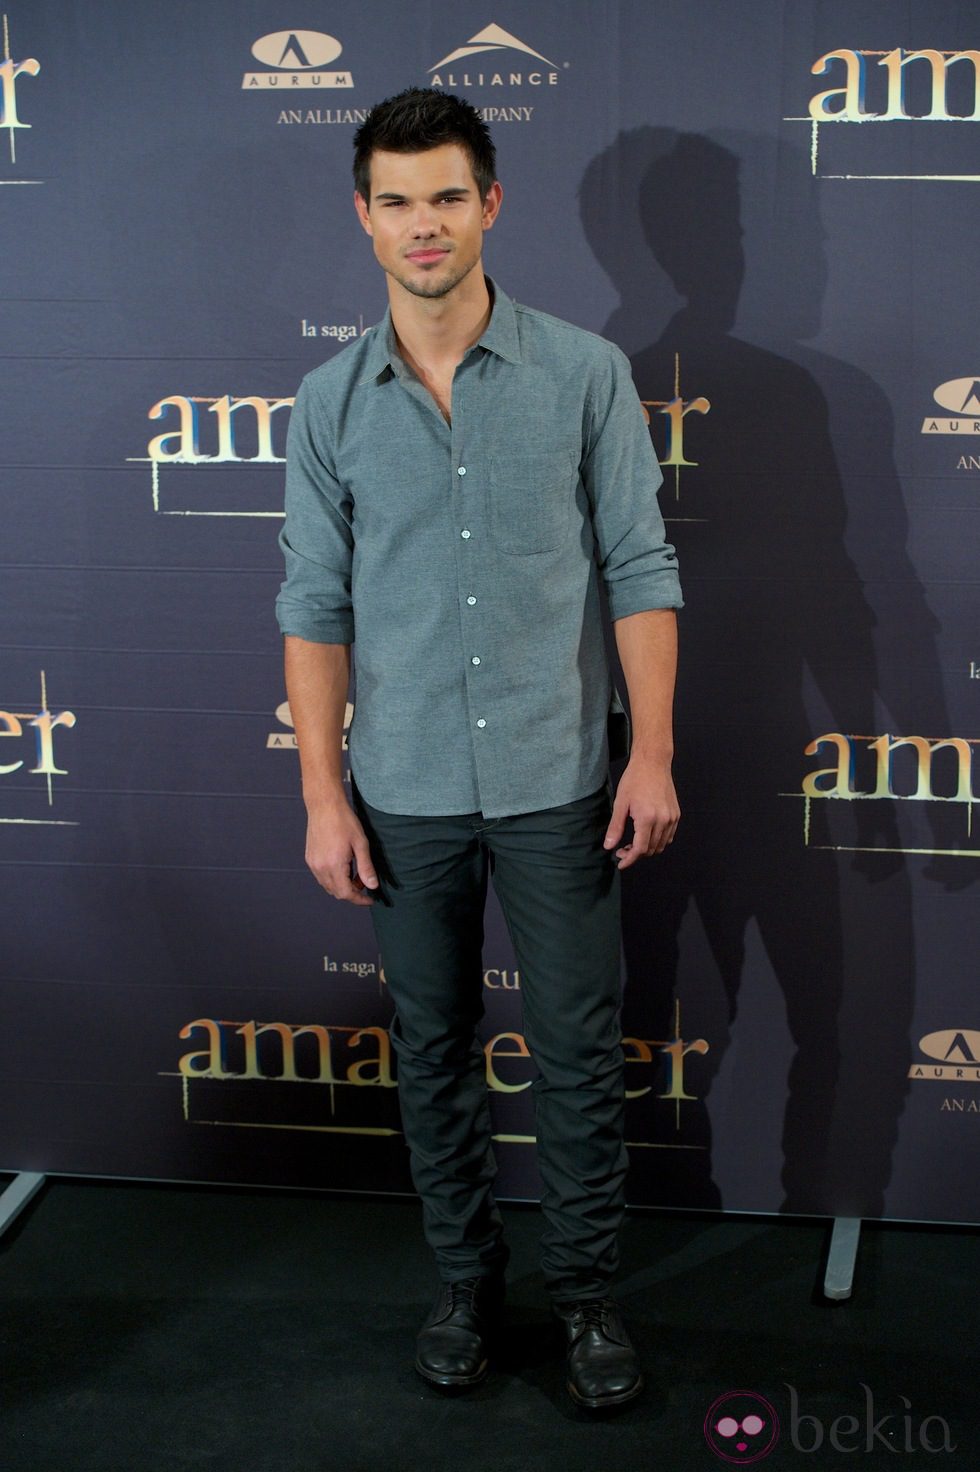 Taylor Lautner en la presentación de 'Amanecer. Parte 2' en Madrid